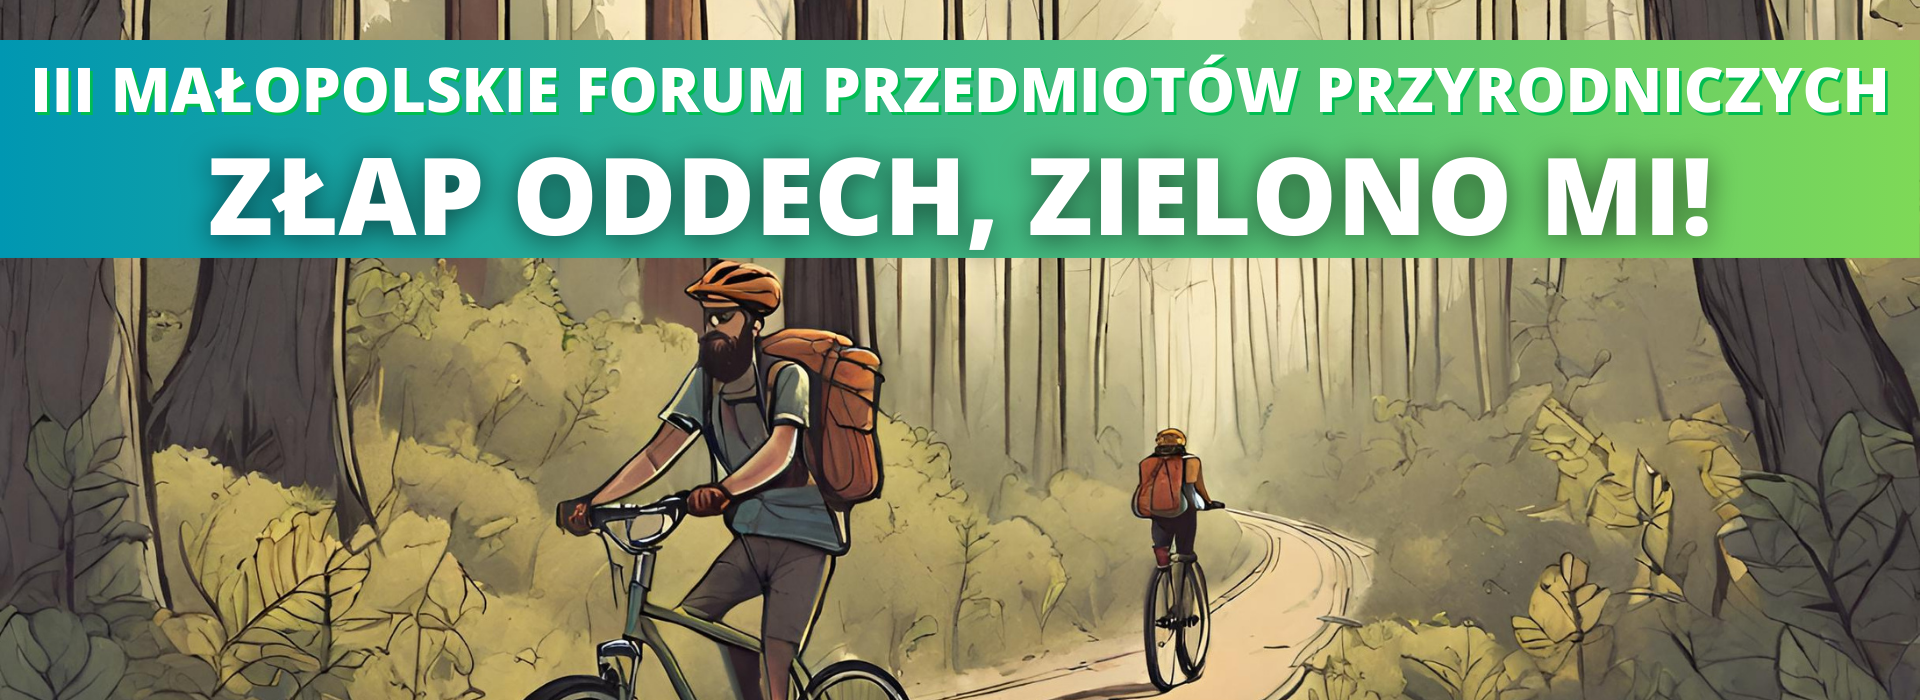 Belka III Małopolskie Forum Przedmiotów Przyrodniczych